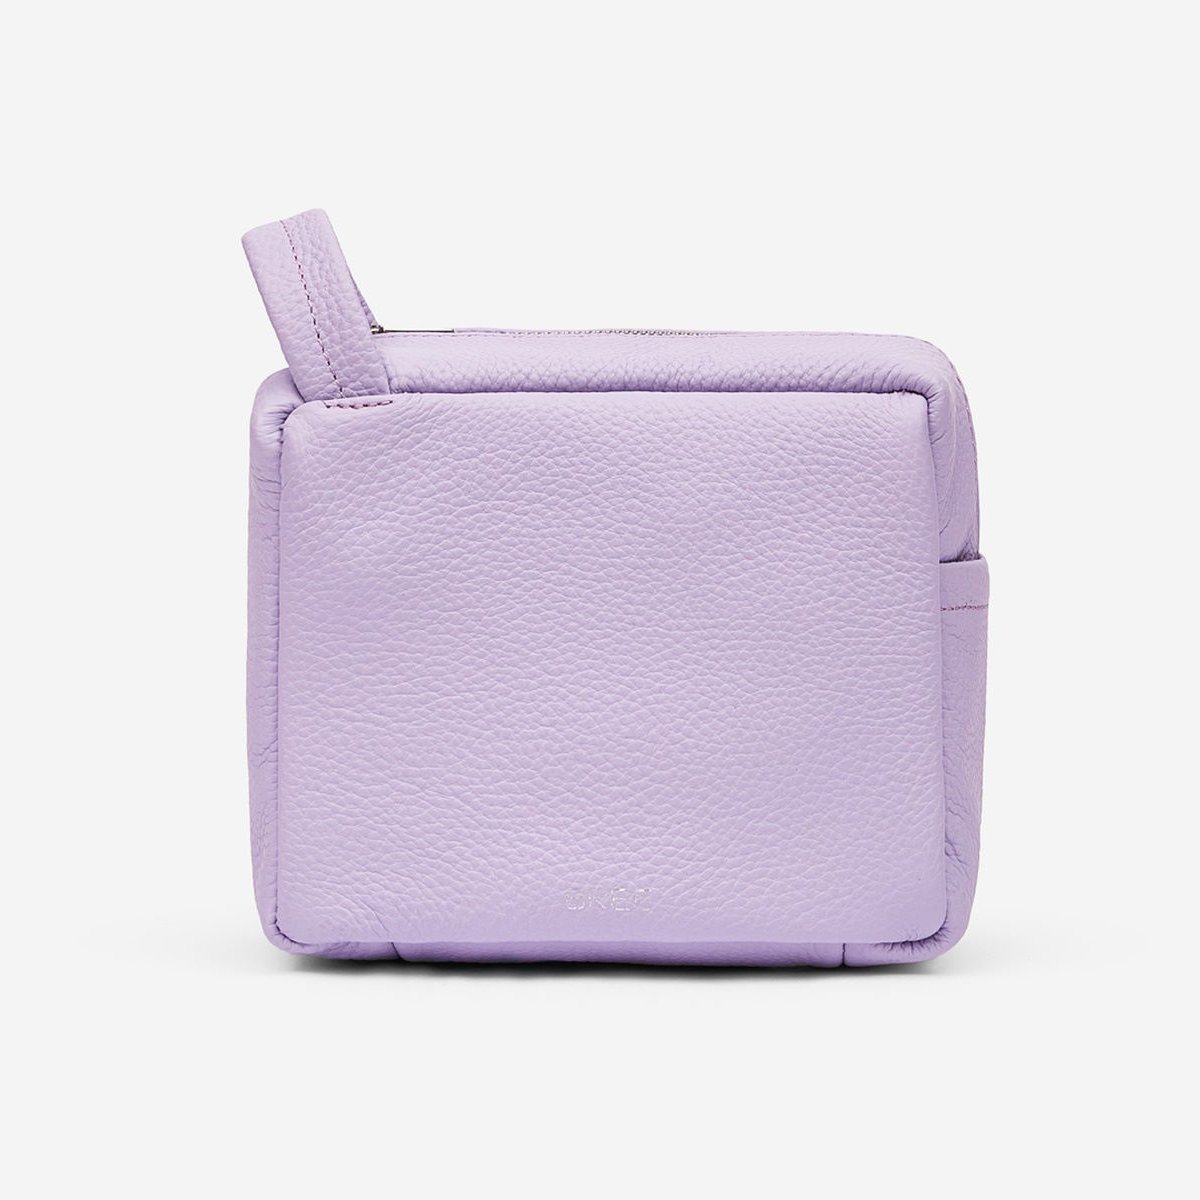 MIA SLG 2 Handtasche M SS23 in Smoky Lavender von Bree